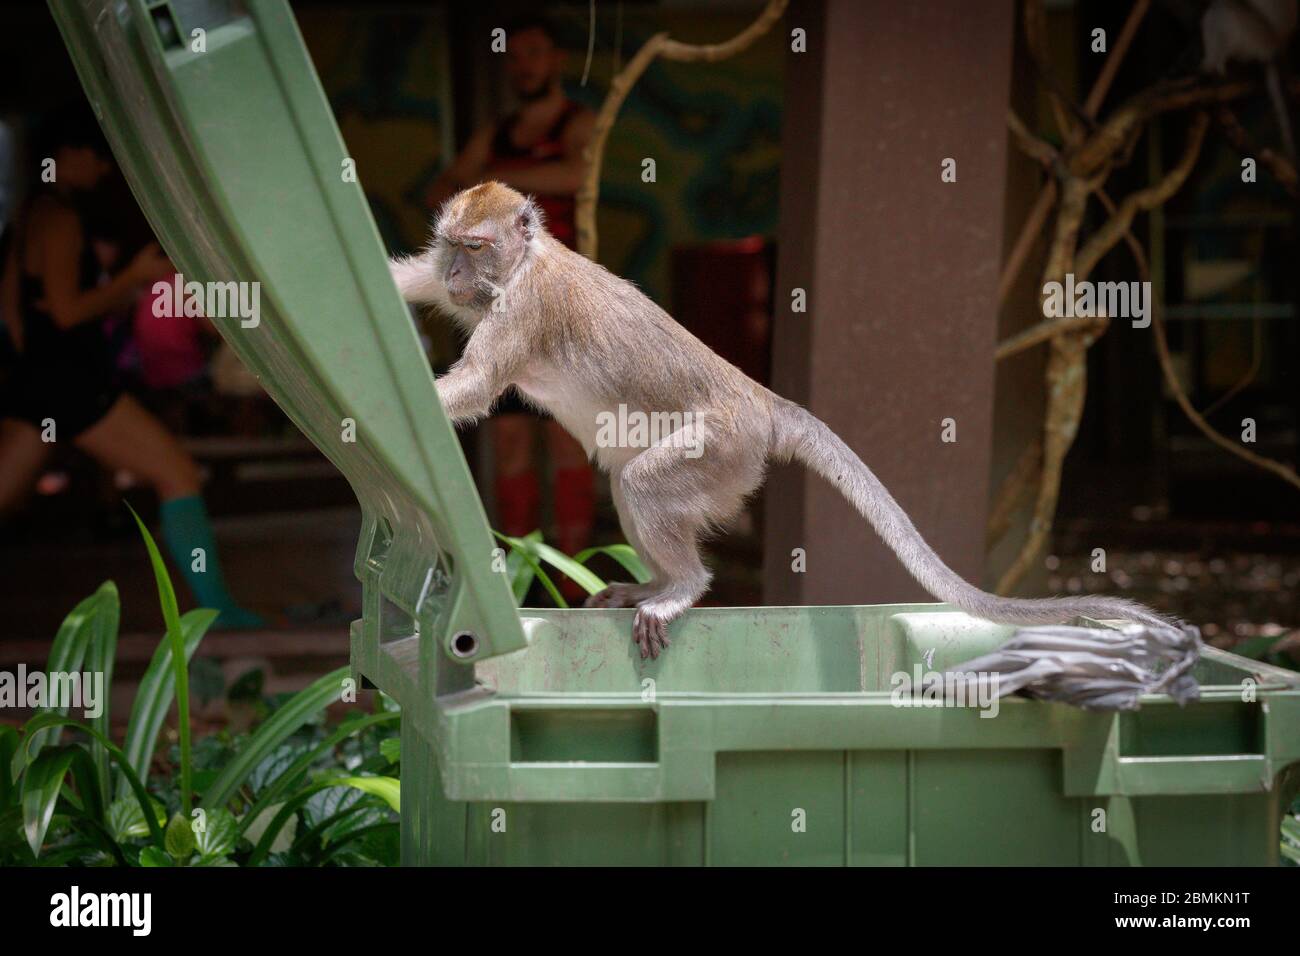 Long-tailed macaque raiding a bin Stock Photo